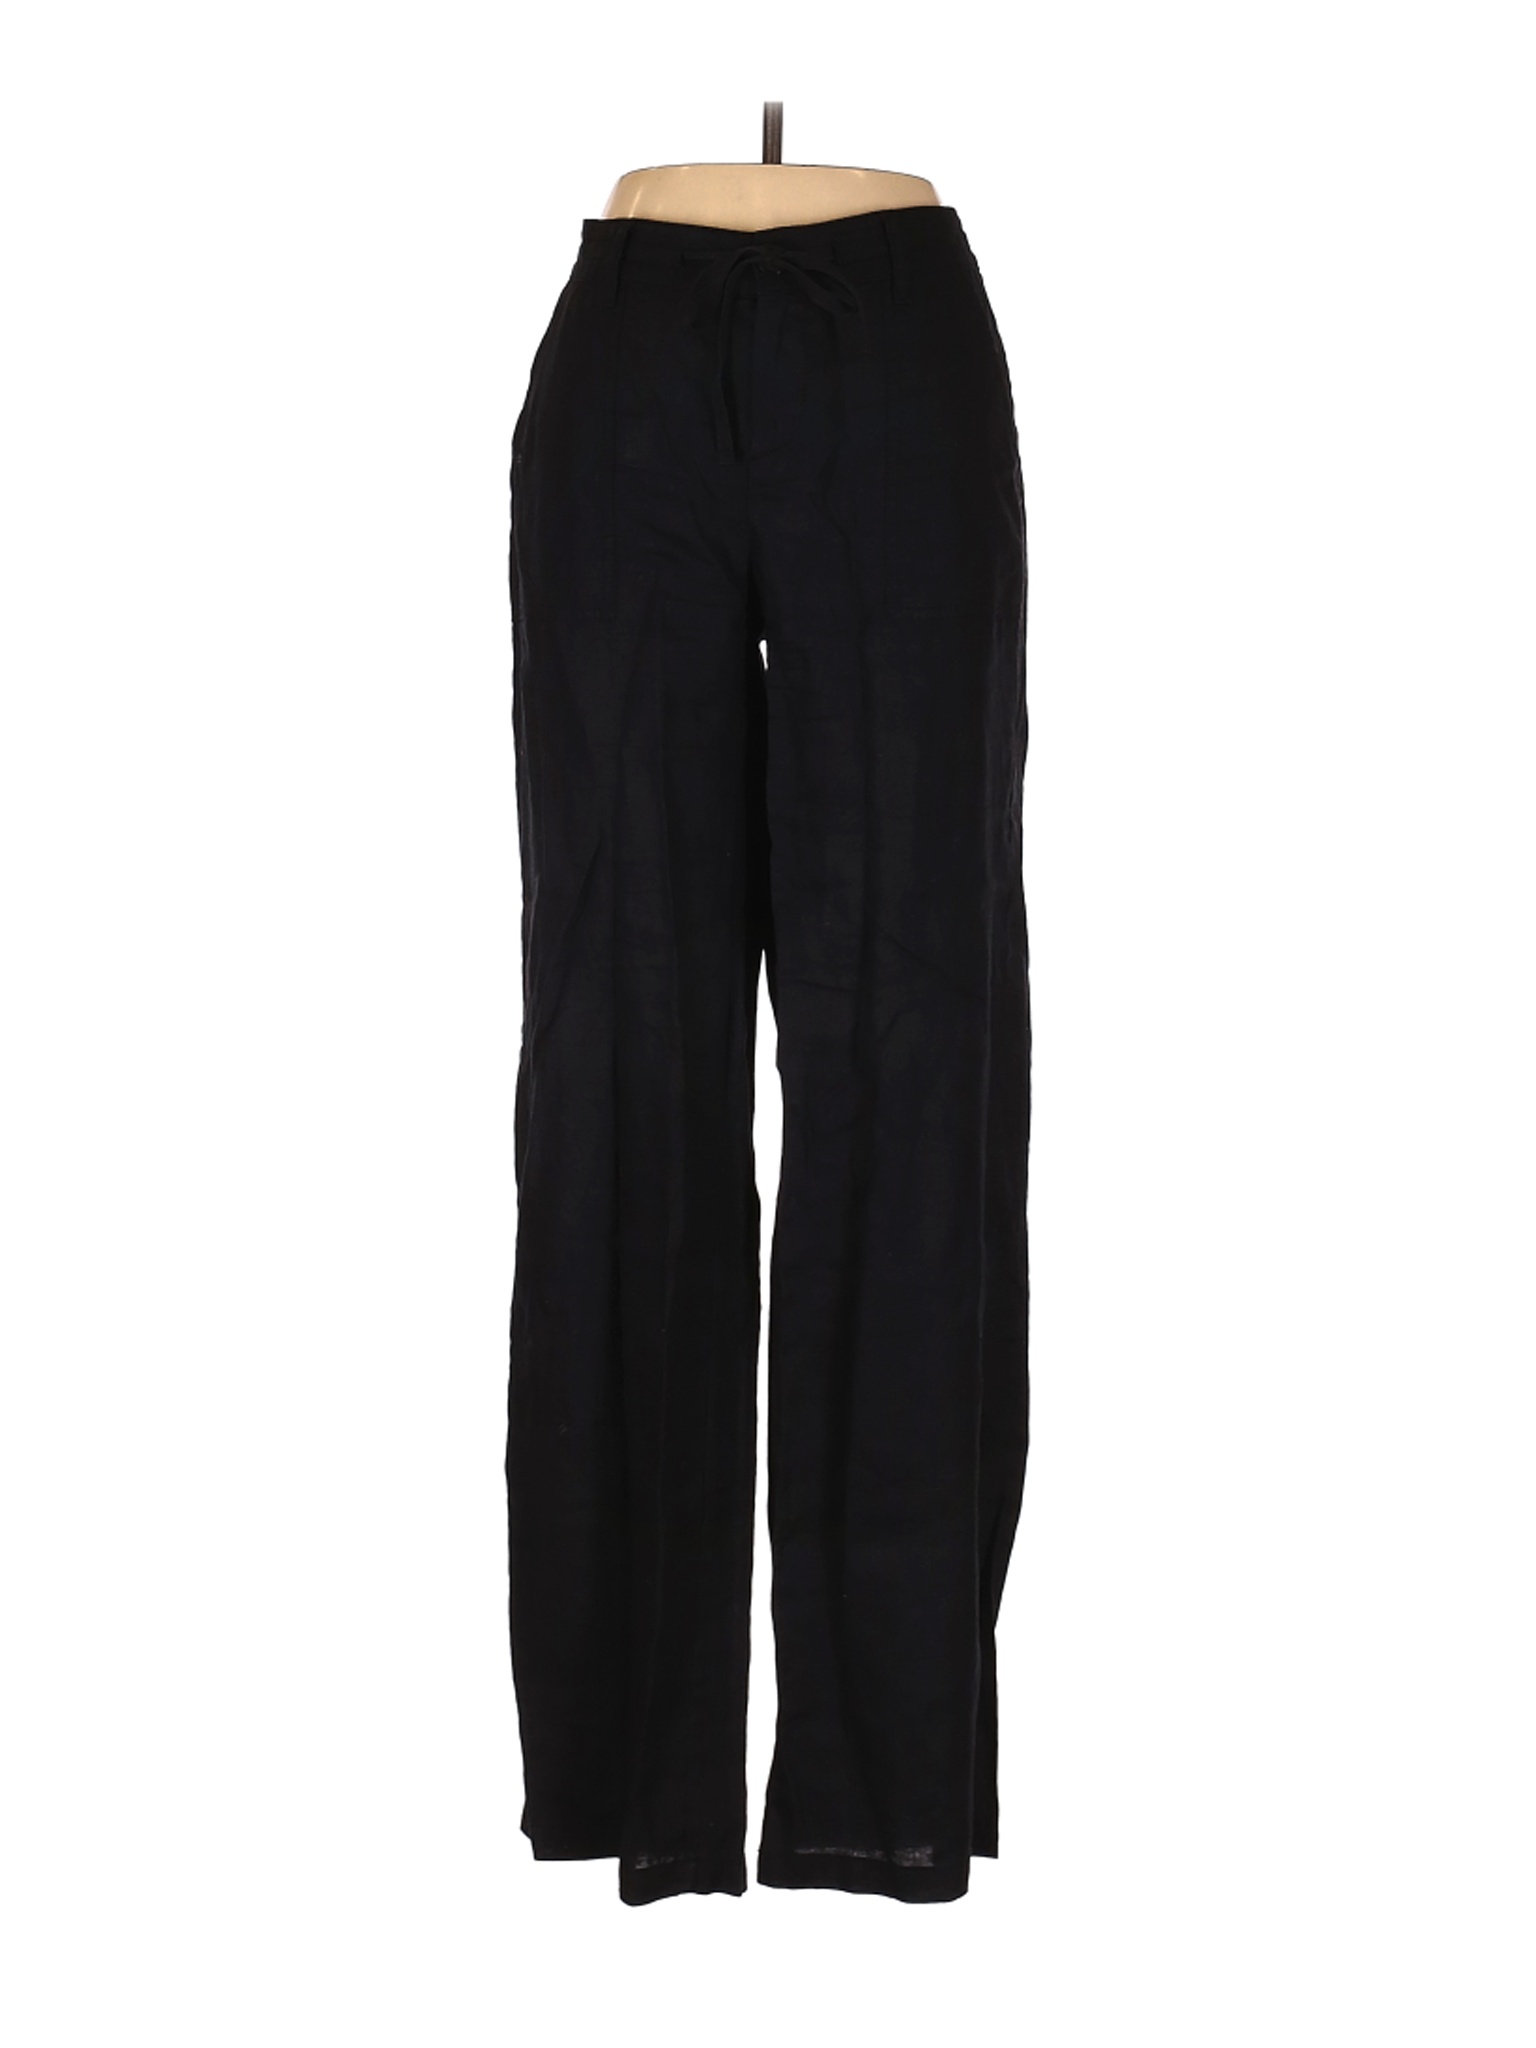 Blue Saks Fifth Avenue Women Black Linen Pants S | eBay